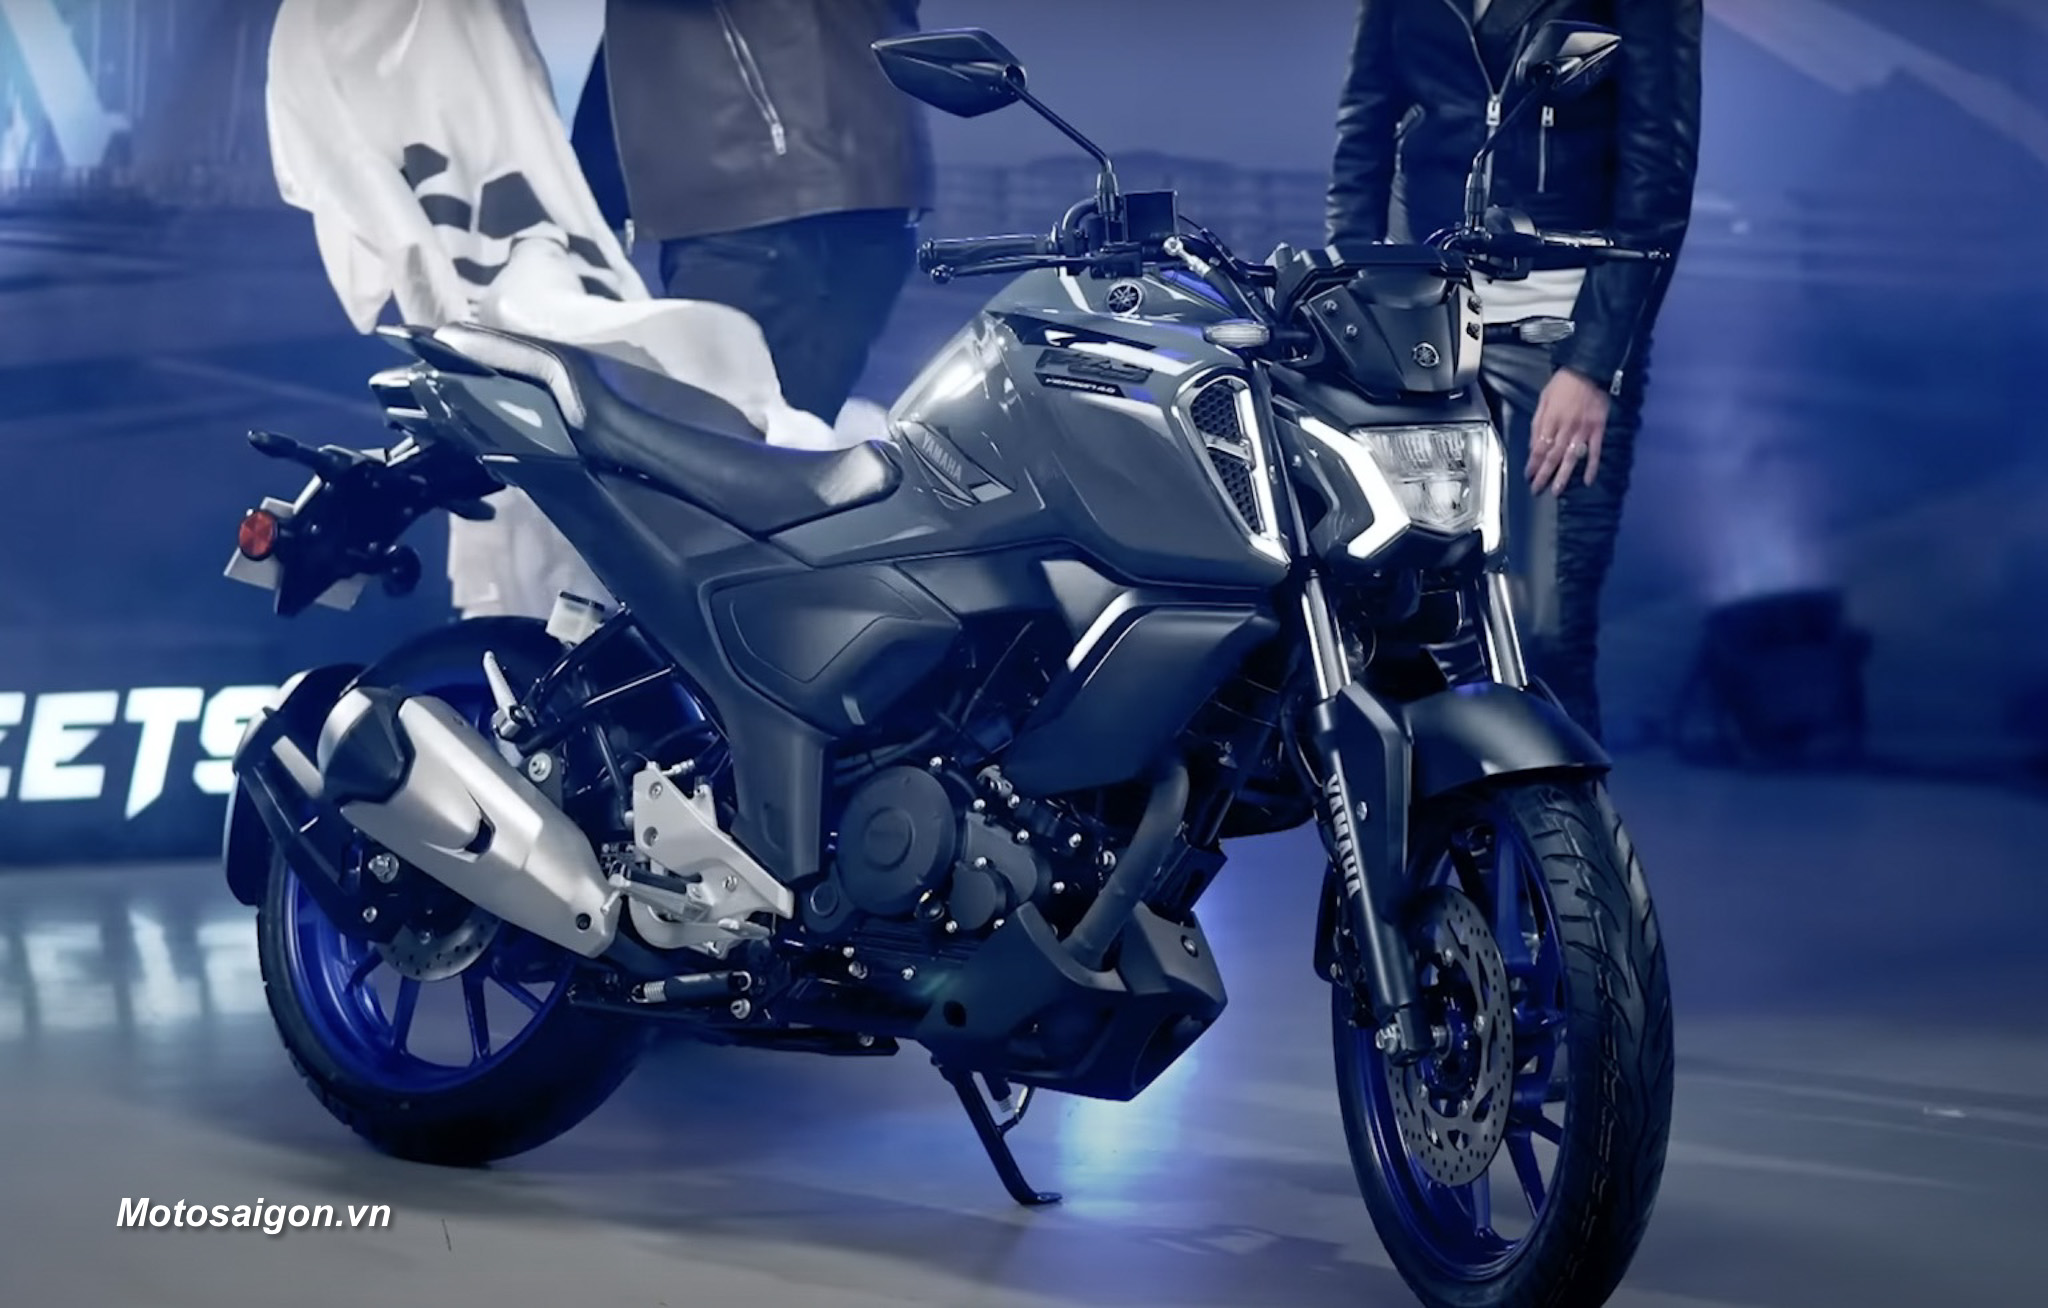  Yamaha MT09  FZ09  2015  VƯƠNG KHANG MOTOR  102086328